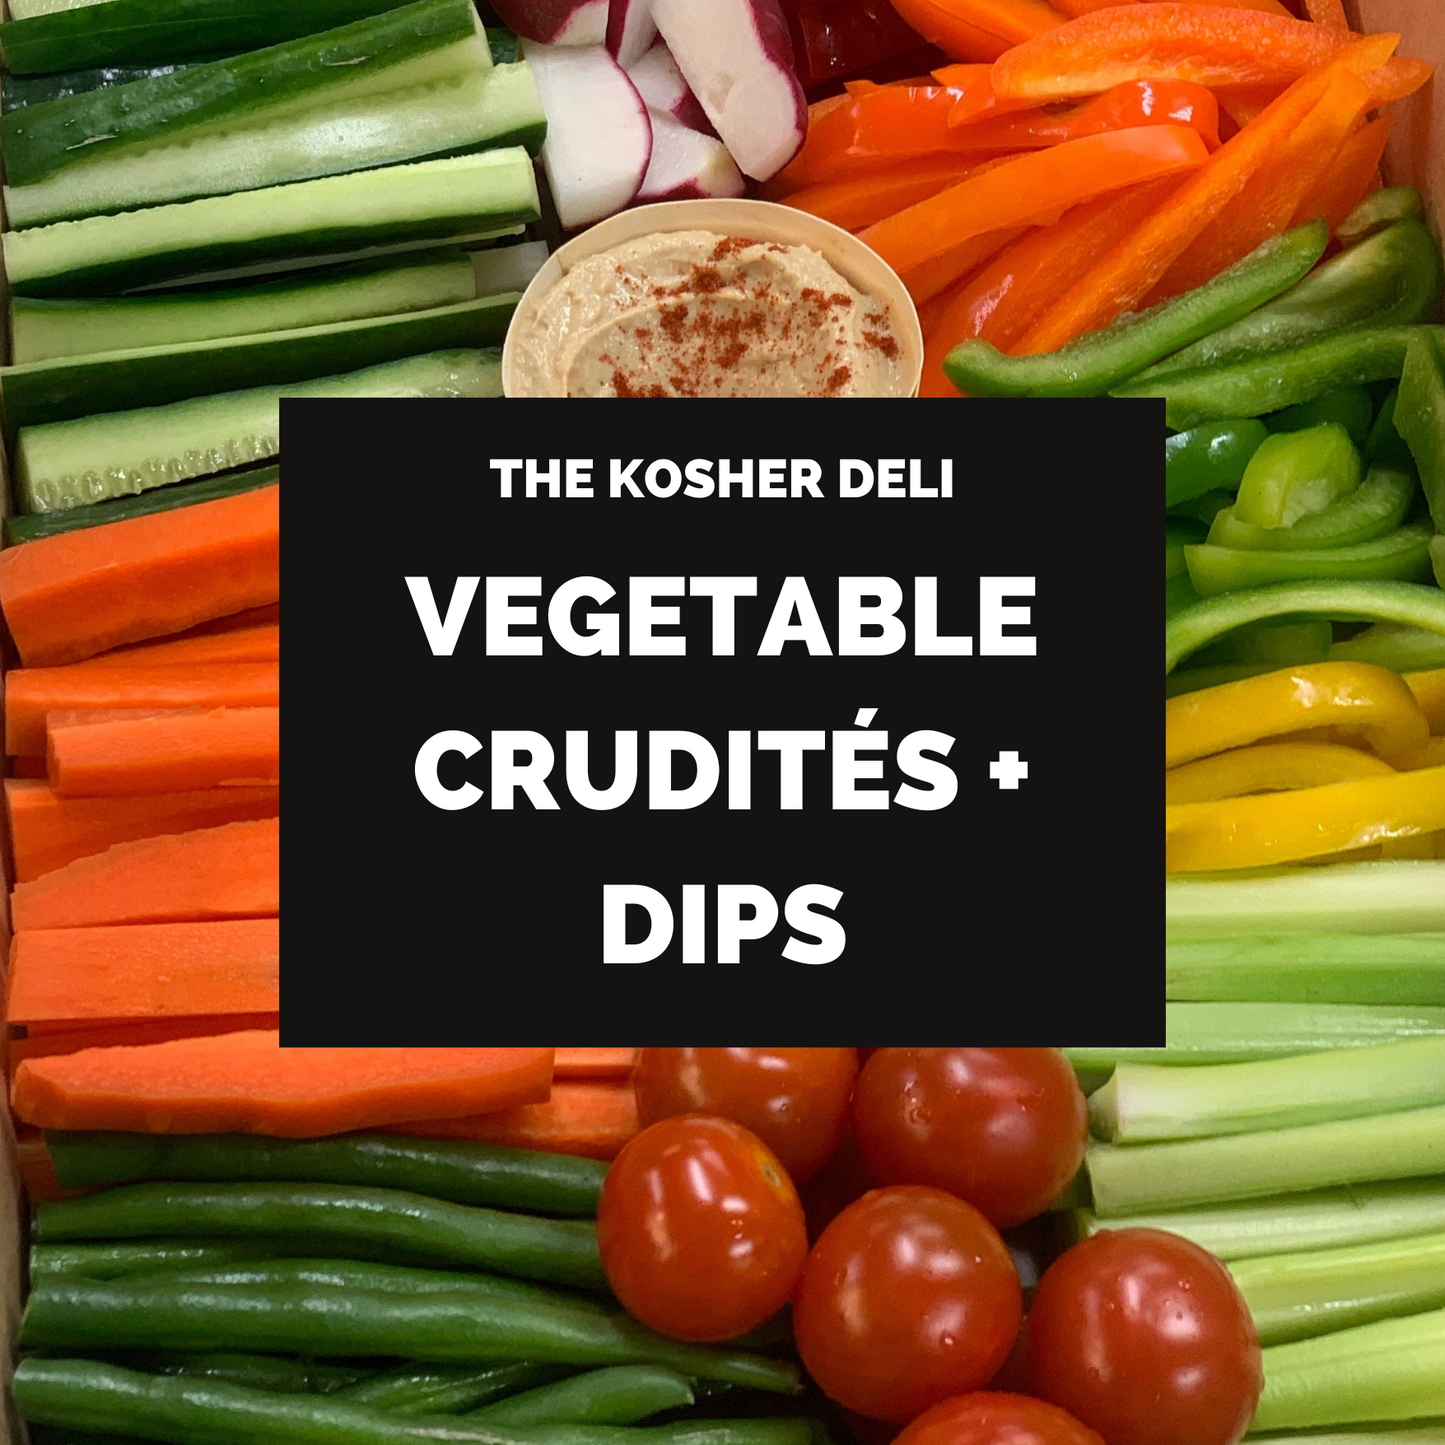 Vegetable Crudites and Dips - serves 15-20 people